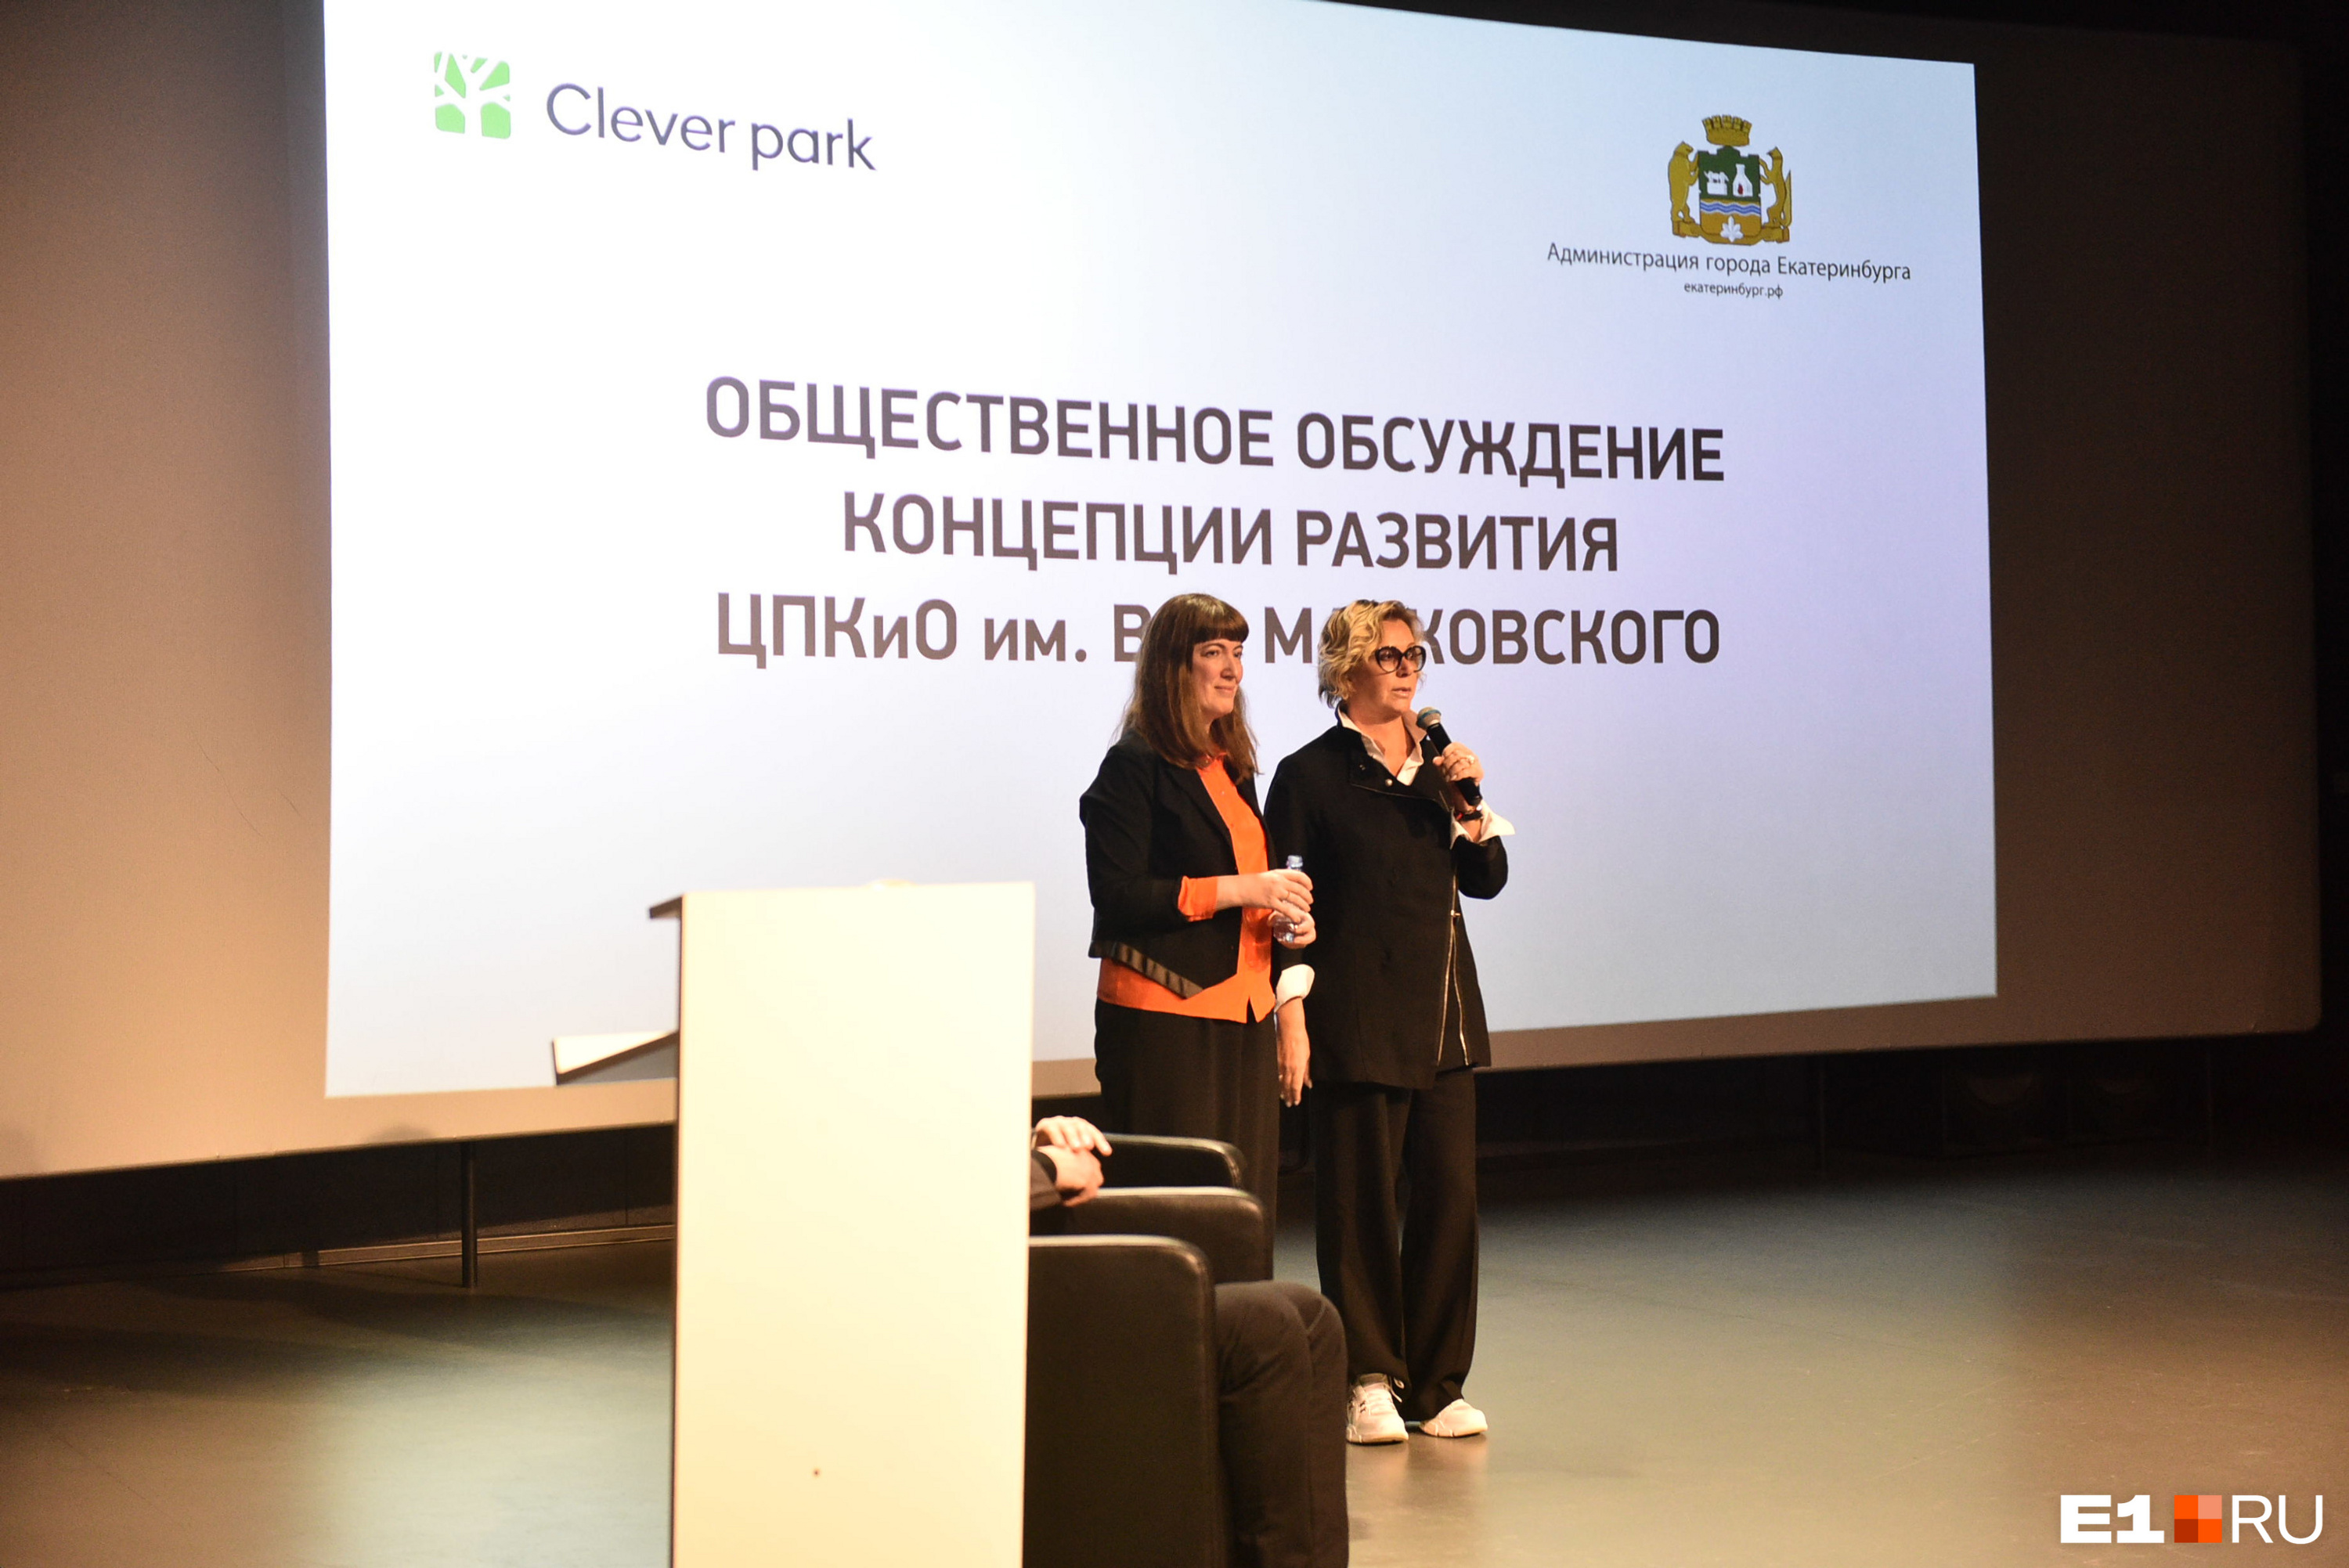 Архитектор Анастасия Смирнова (слева) сказала, что их с коллегой удивила хорошая репутация этого парка. Начальника Управления культуры Татьяну Ярошевскую это возмутило 